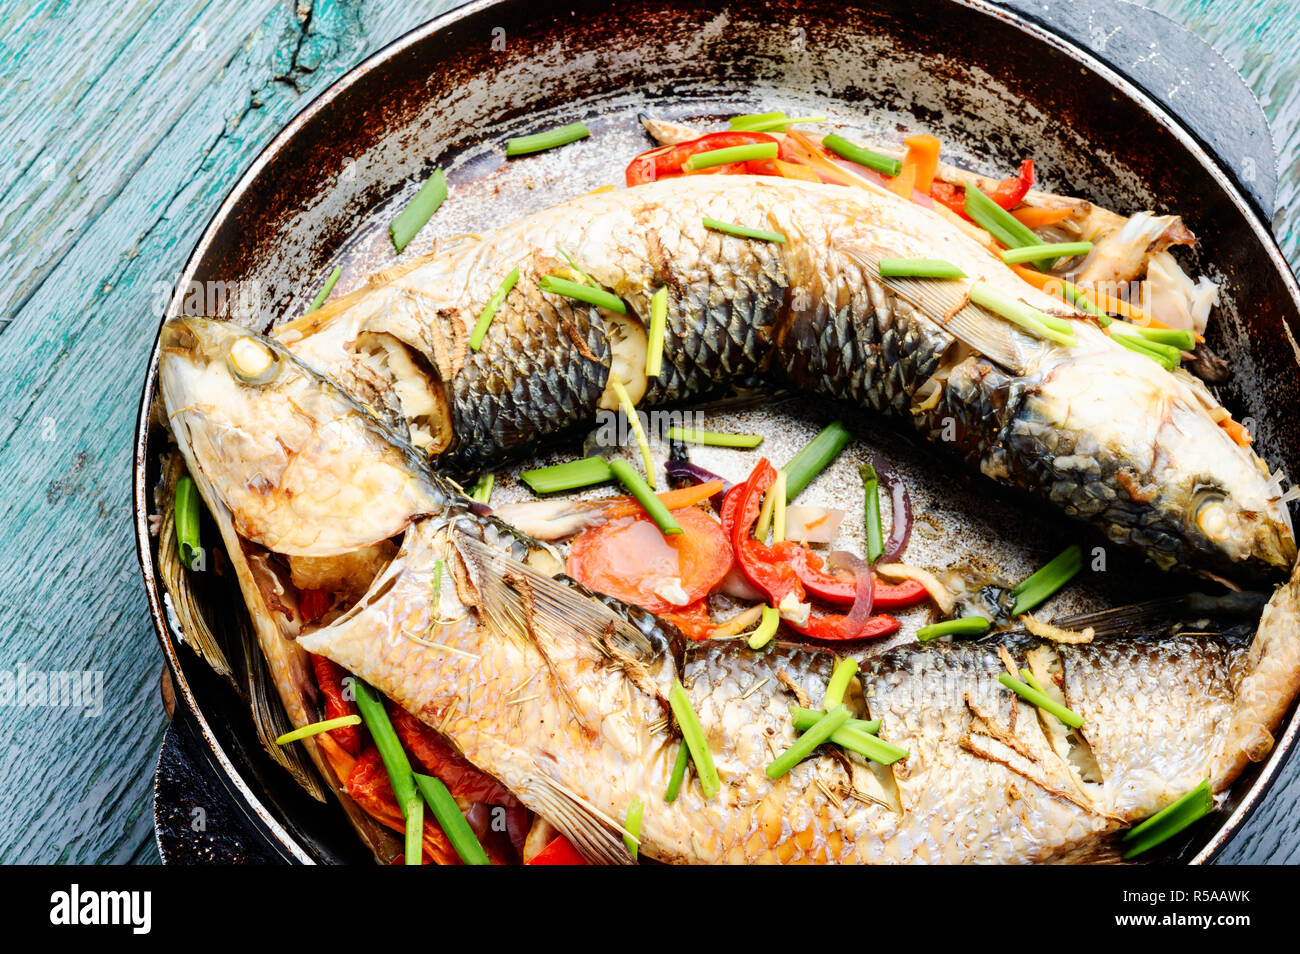 Pesce al forno ripieno di verdure.la dieta e il cibo sano Foto Stock